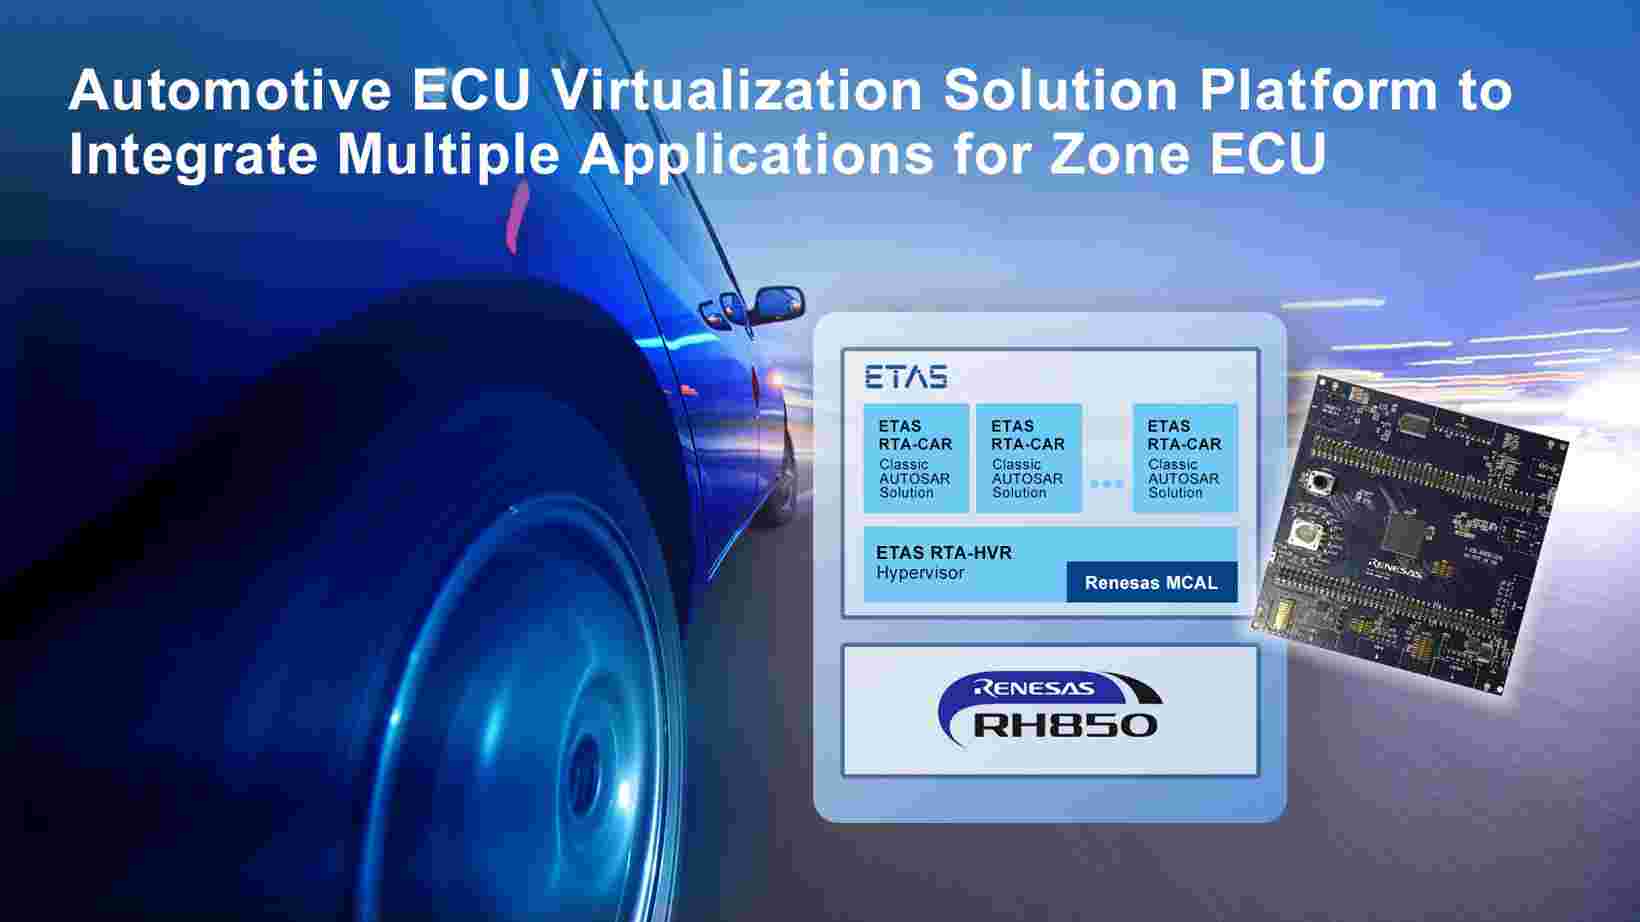 瑞萨推出汽车ECU虚拟化解决方案平台 实现区域ECU多个应用程序的安全集成